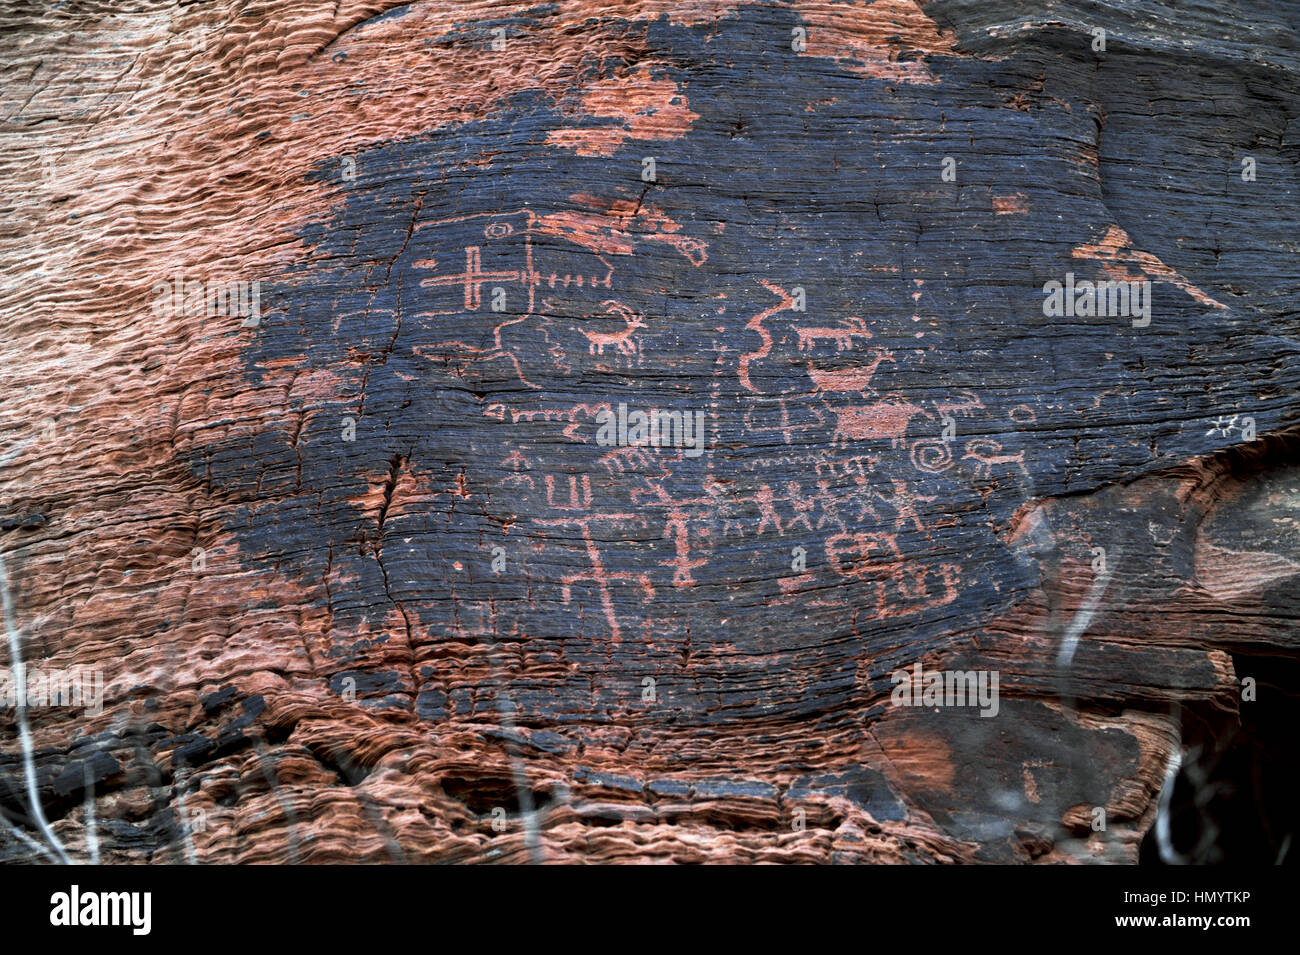 Valley of Fire State Park verfügt über 2.000 Jahre alte Felszeichnungen in massiven roten Sandstein-Formationen in der Mohave Wüste geschnitzt. Stockfoto